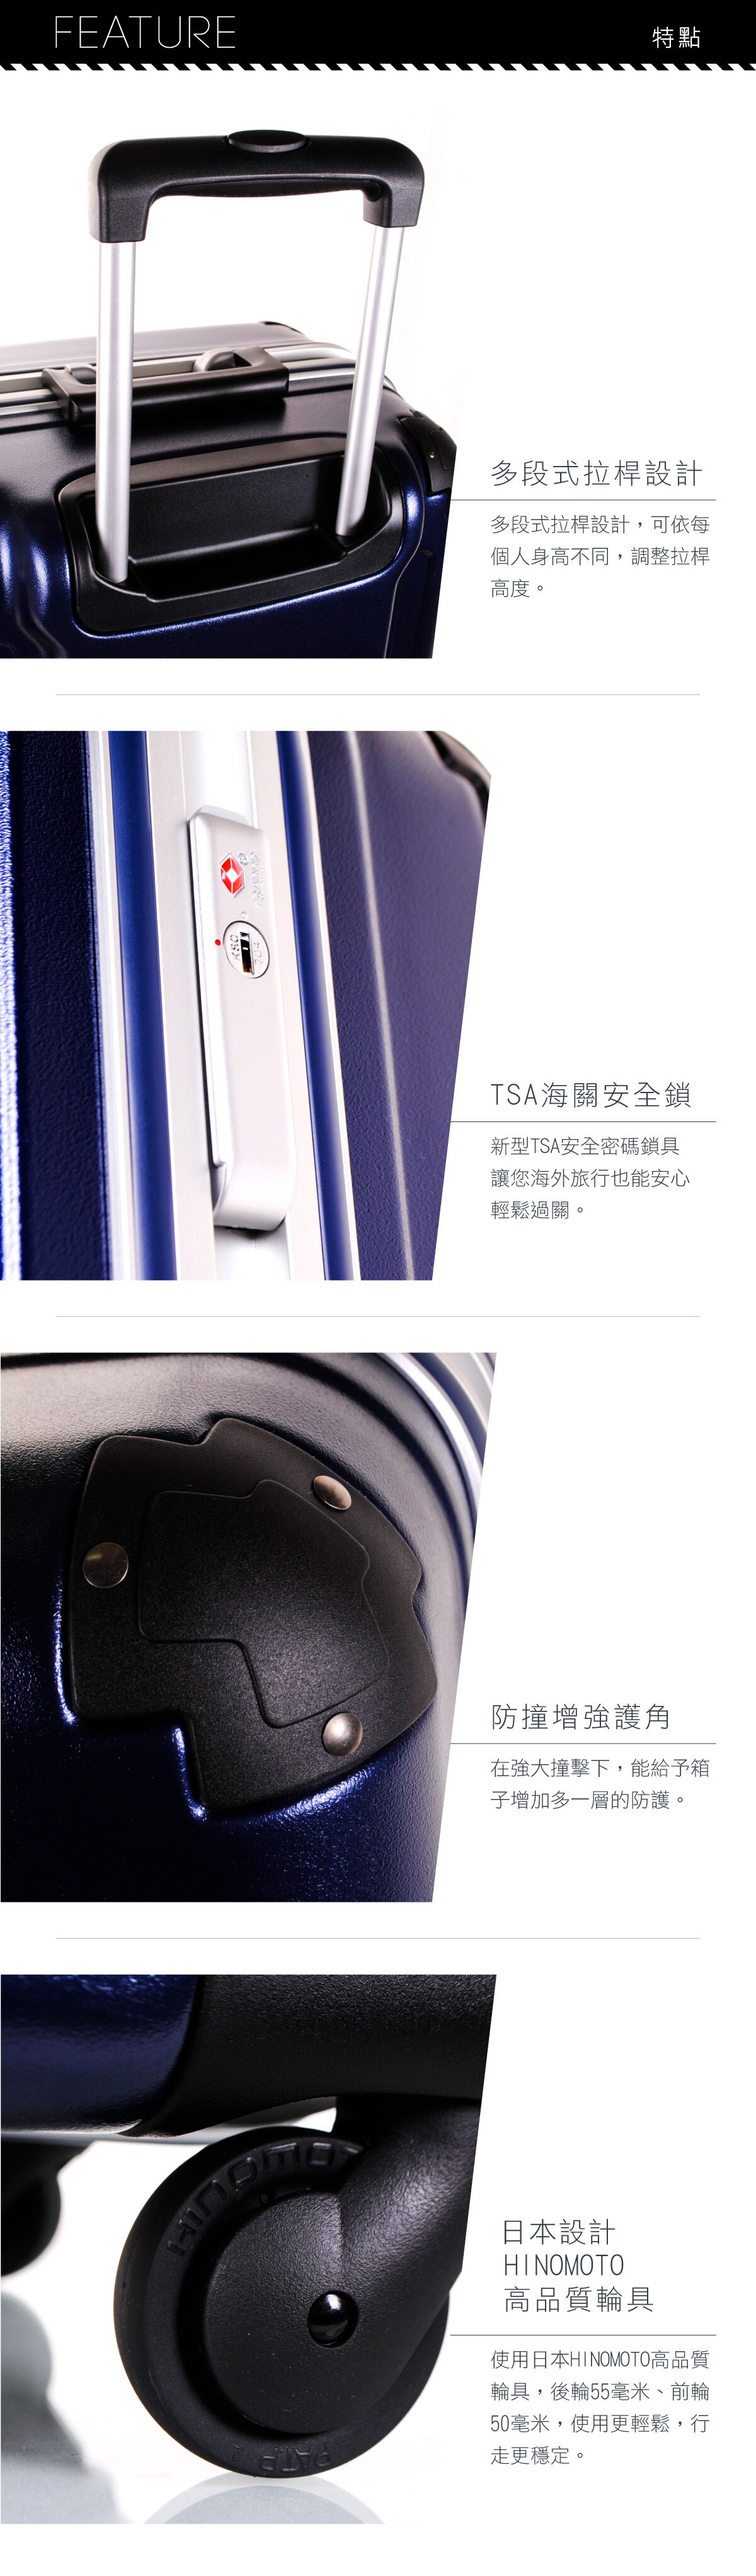 Crown 炫彩鋁框硬殼行李箱特點:多段式拉桿設計,TSA海關安全鎖,防撞增強護角,HINOMOTO高品質輪具.